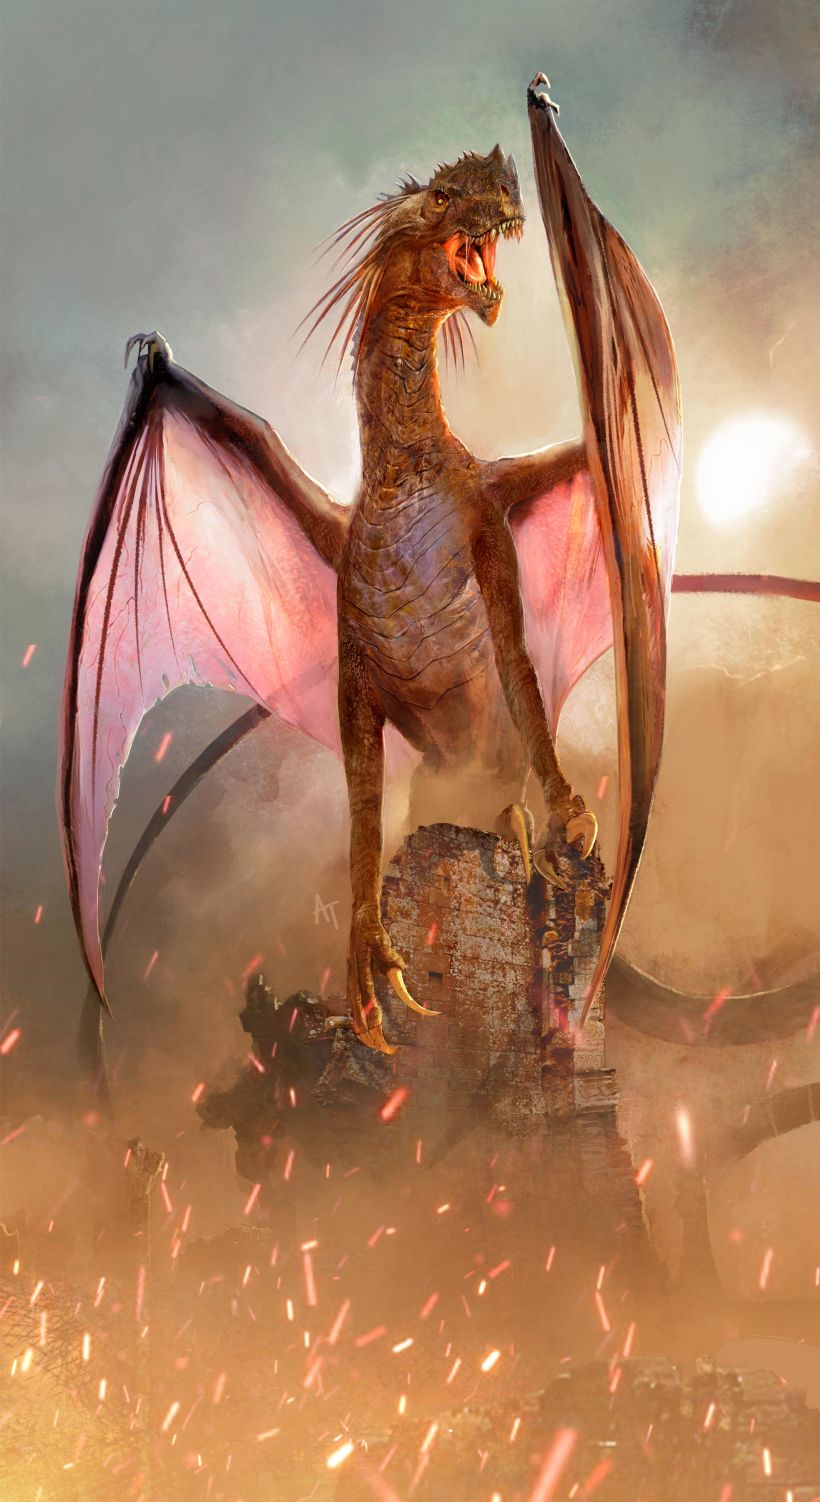 Arte conceptual para la versión femenina del dragón, una de las imágenes incluidas en "Lord Of Kingdoms"